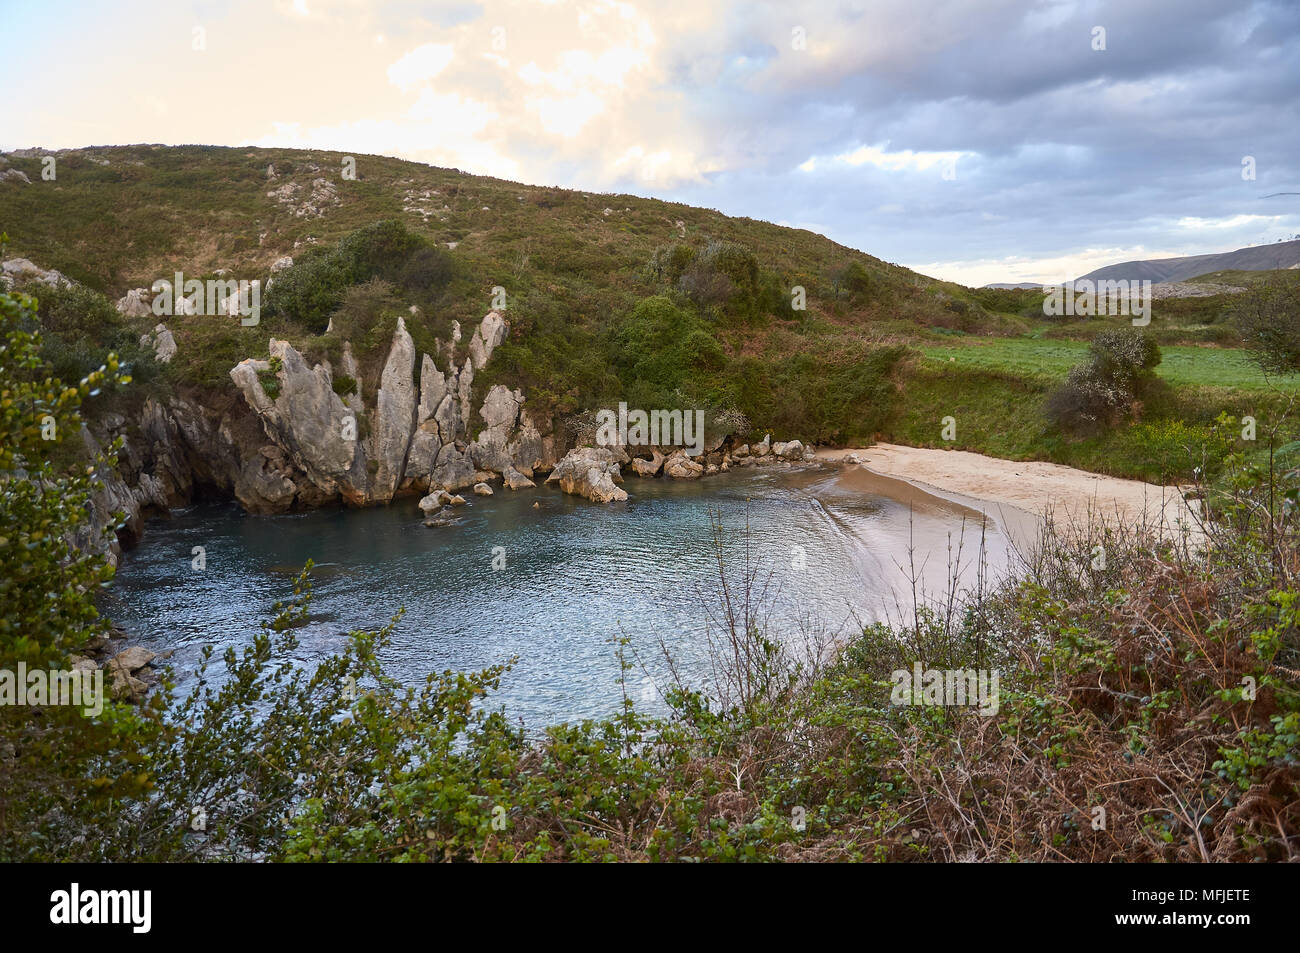 Tramonto sulla spiaggia di Gulpiyuri, che è una spiaggia interna sornata in una dolina alluvionata creata dall'erosione carsica (mare Cantabrico, Naves, Llanes, Asturie, Spagna) Foto Stock